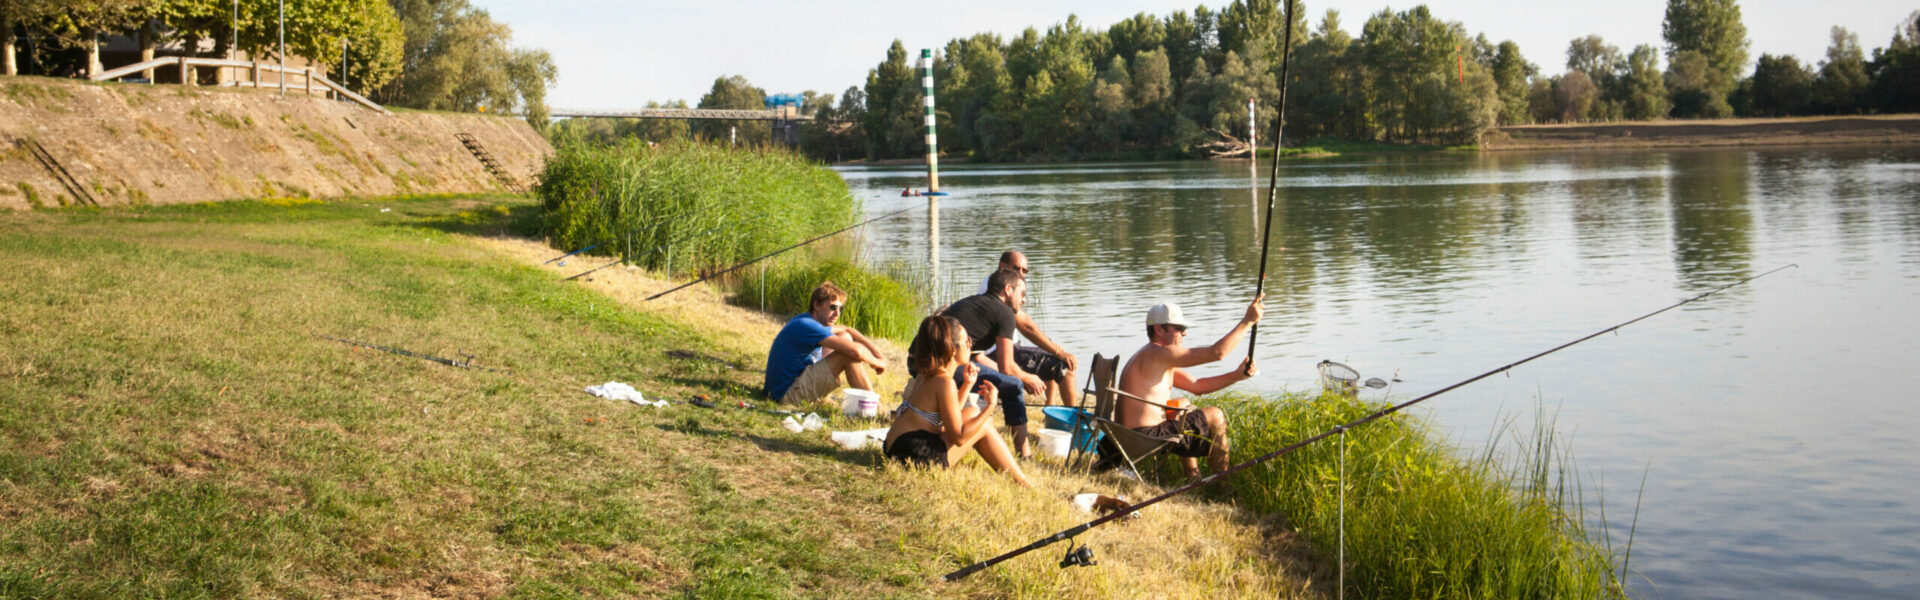 Fishing - Montmerle-sur-Saône - Ain